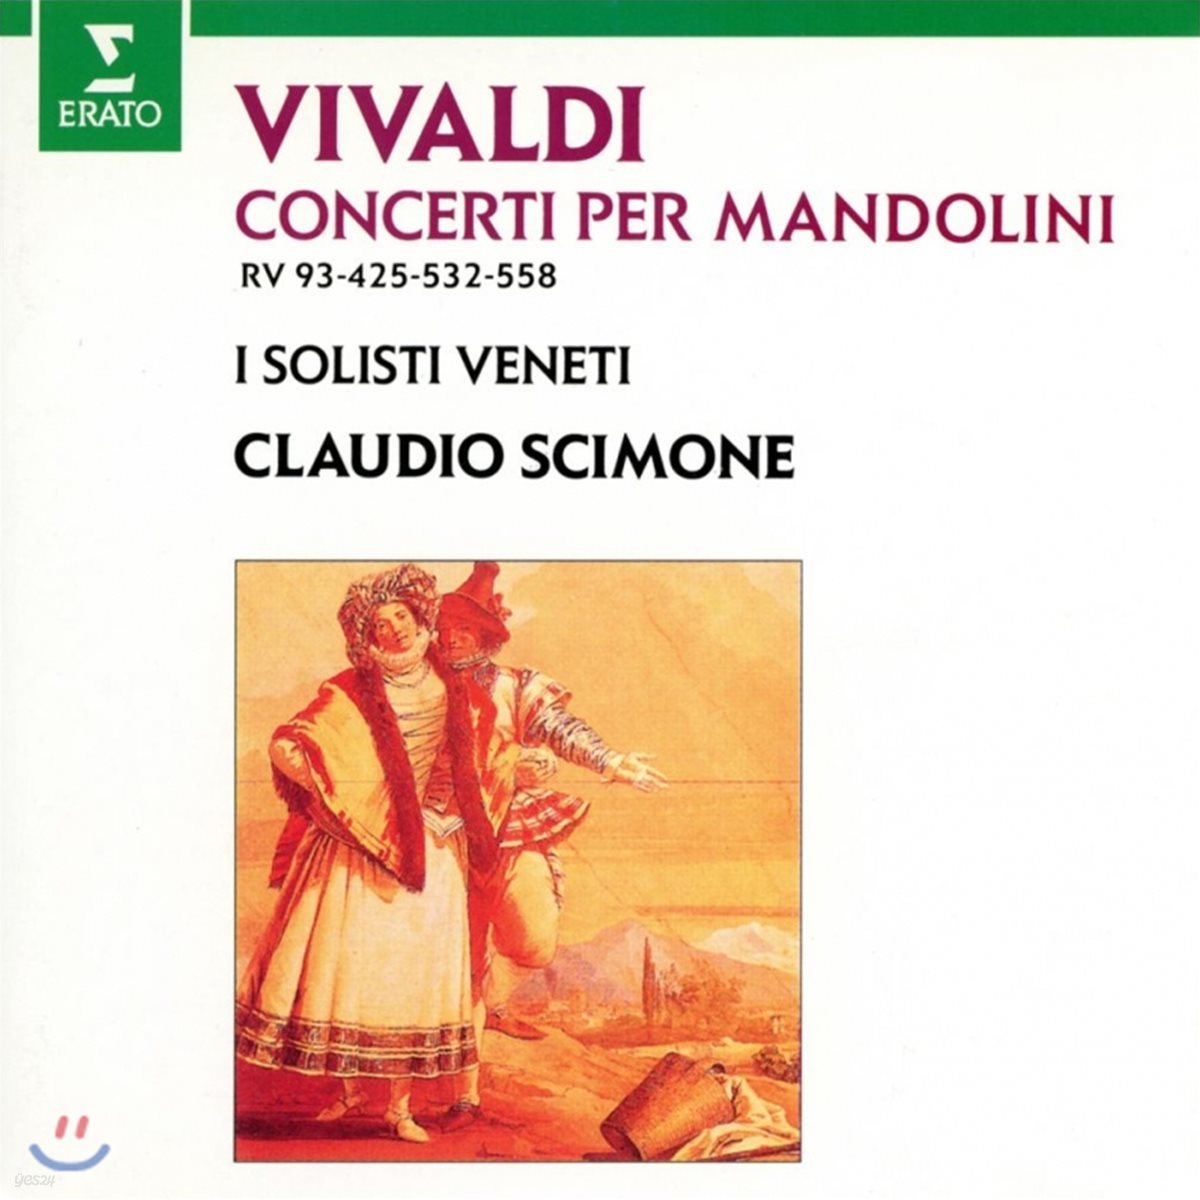 Claudio Scimone 비발디: 만돌린 협주곡 (Vivaldi: Mandolin Concerto)